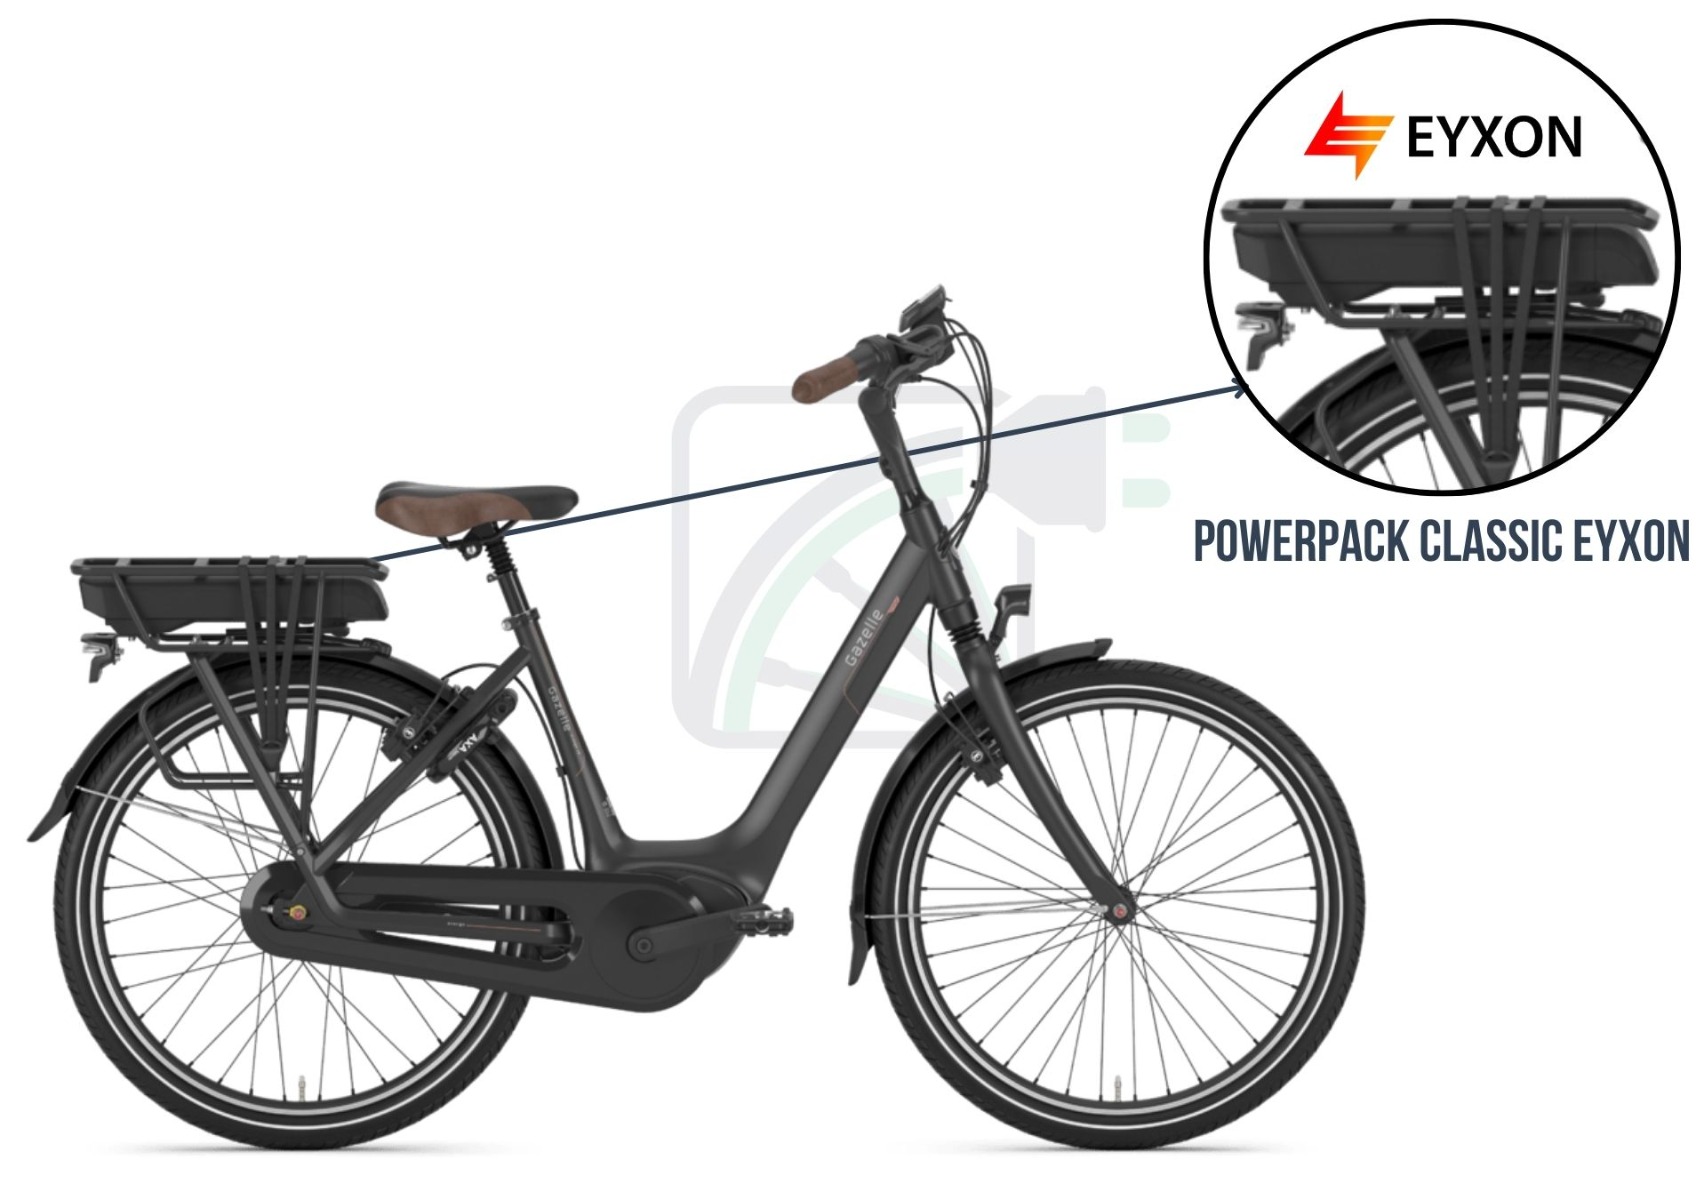 En del af billedet er forstørret, og cykelbatteriet er fremhævet. De mulige batterier til denne elektriske cykel nævnes også. Disse er Bosch PowerPack Classic-kompatible batterier fra EYXON.